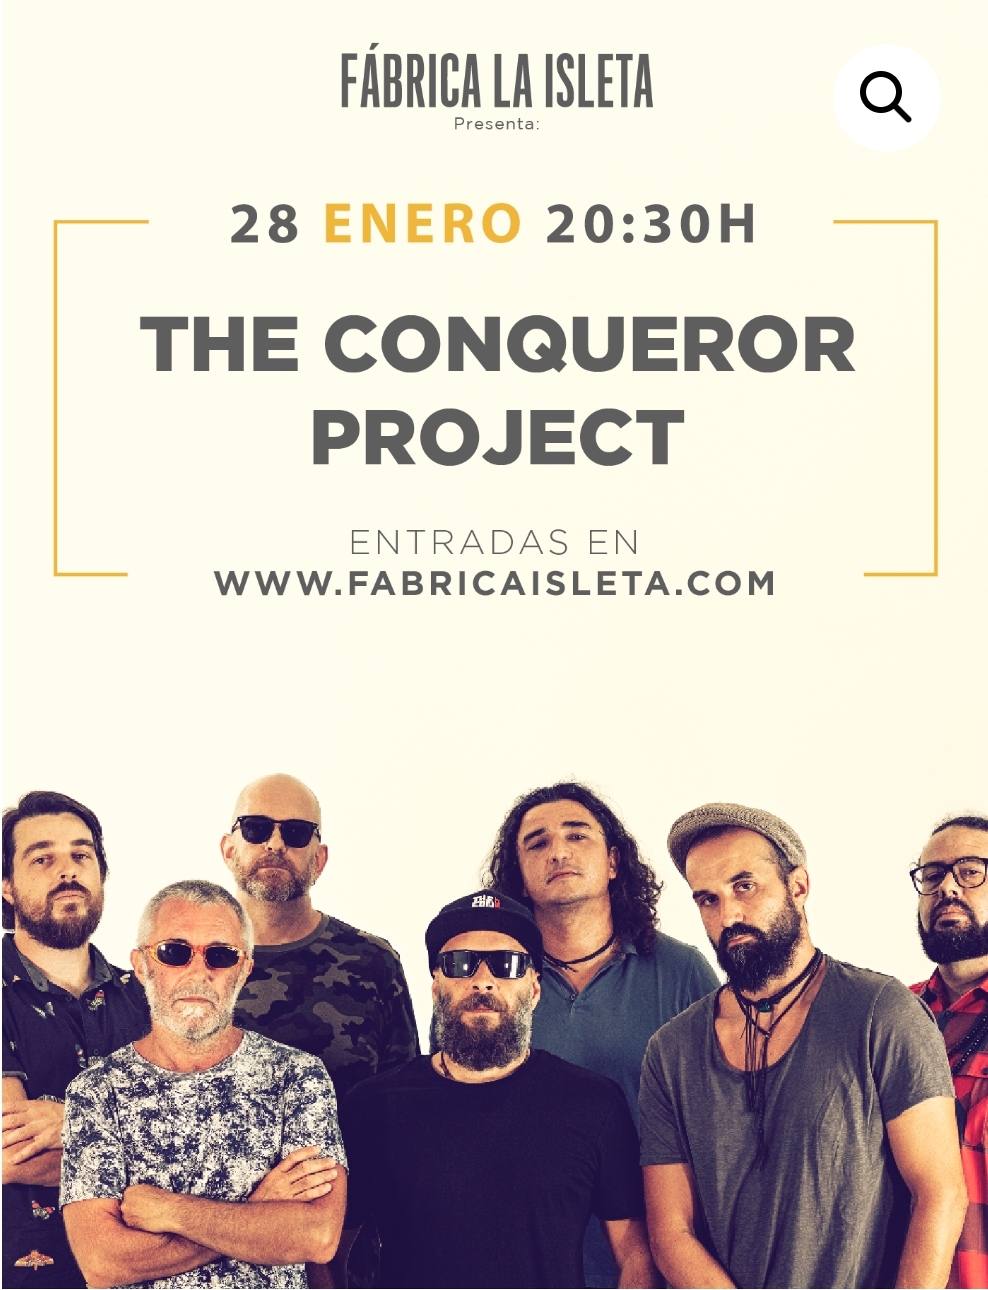 The Conqueror Project